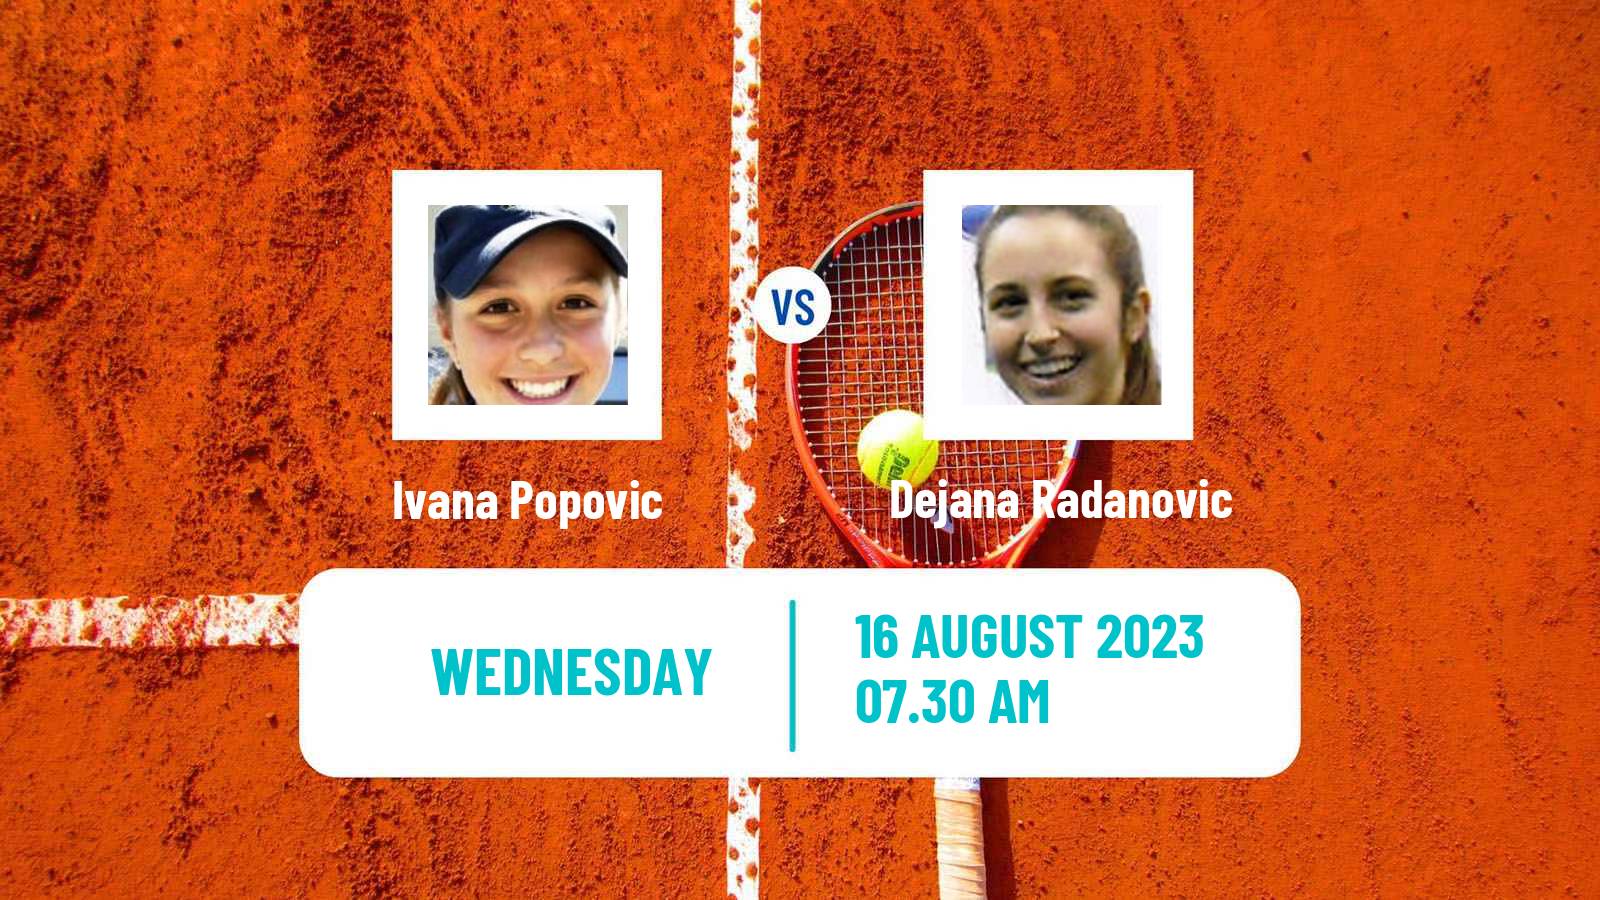 Tennis ITF W25 Vrnjacka Banja Women Ivana Popovic - Dejana Radanovic